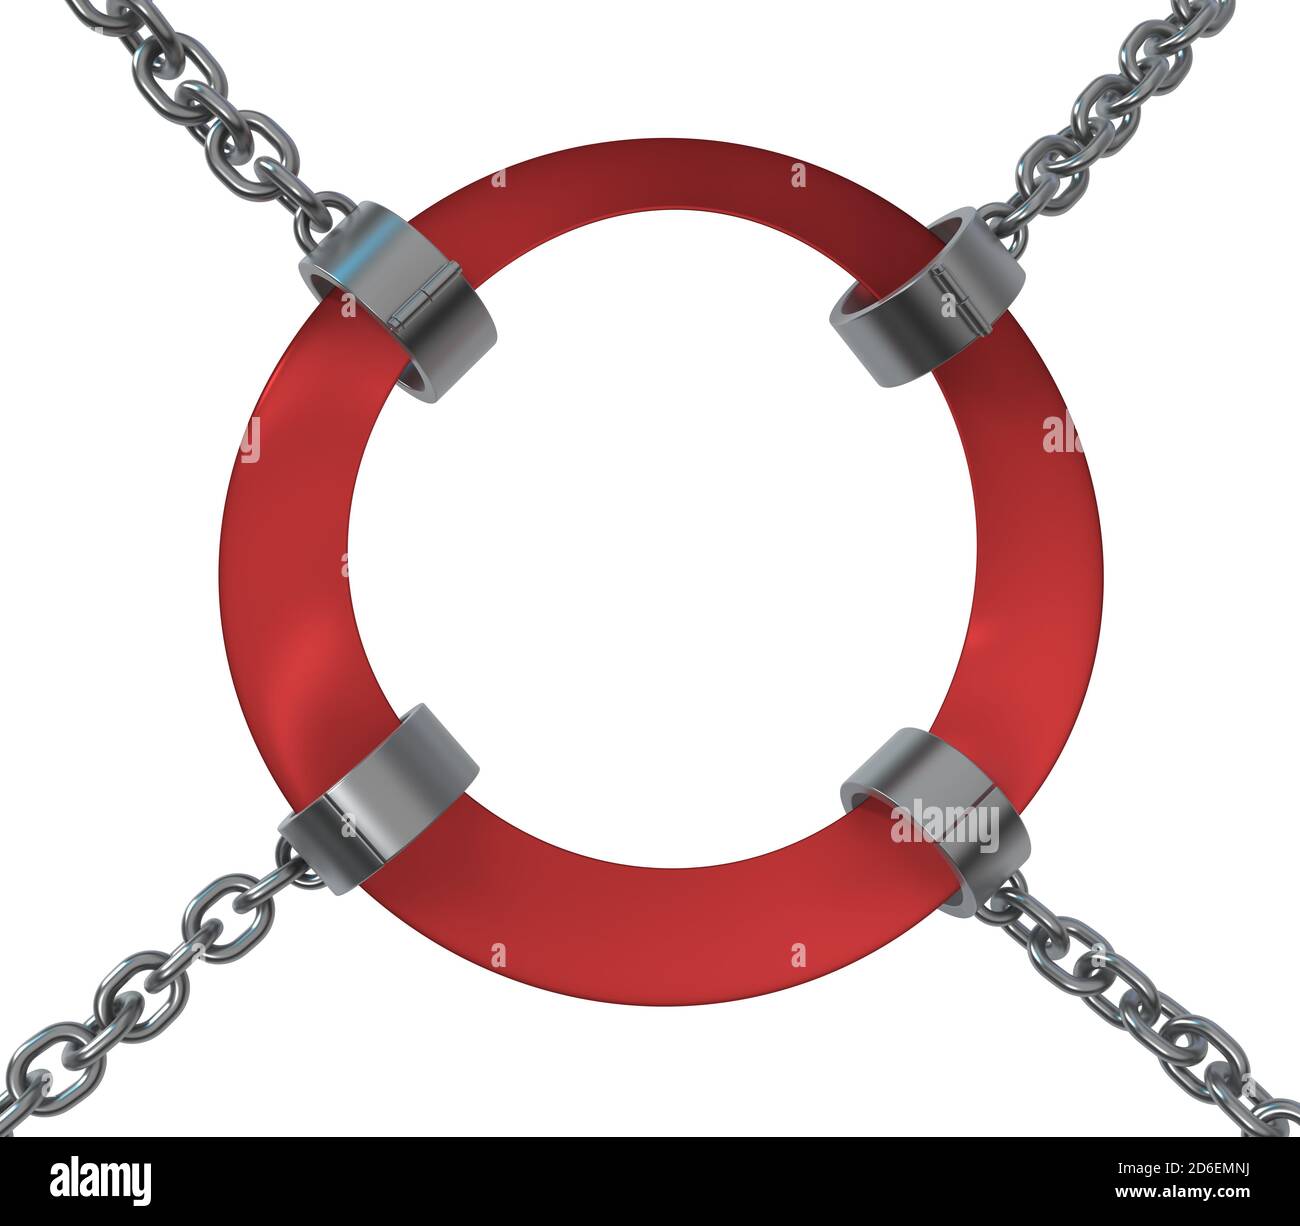 Ruban rouge manilles anneau signe de maintien, chaîne métal 3d illustration, isolé, horizontal, sur blanc Banque D'Images